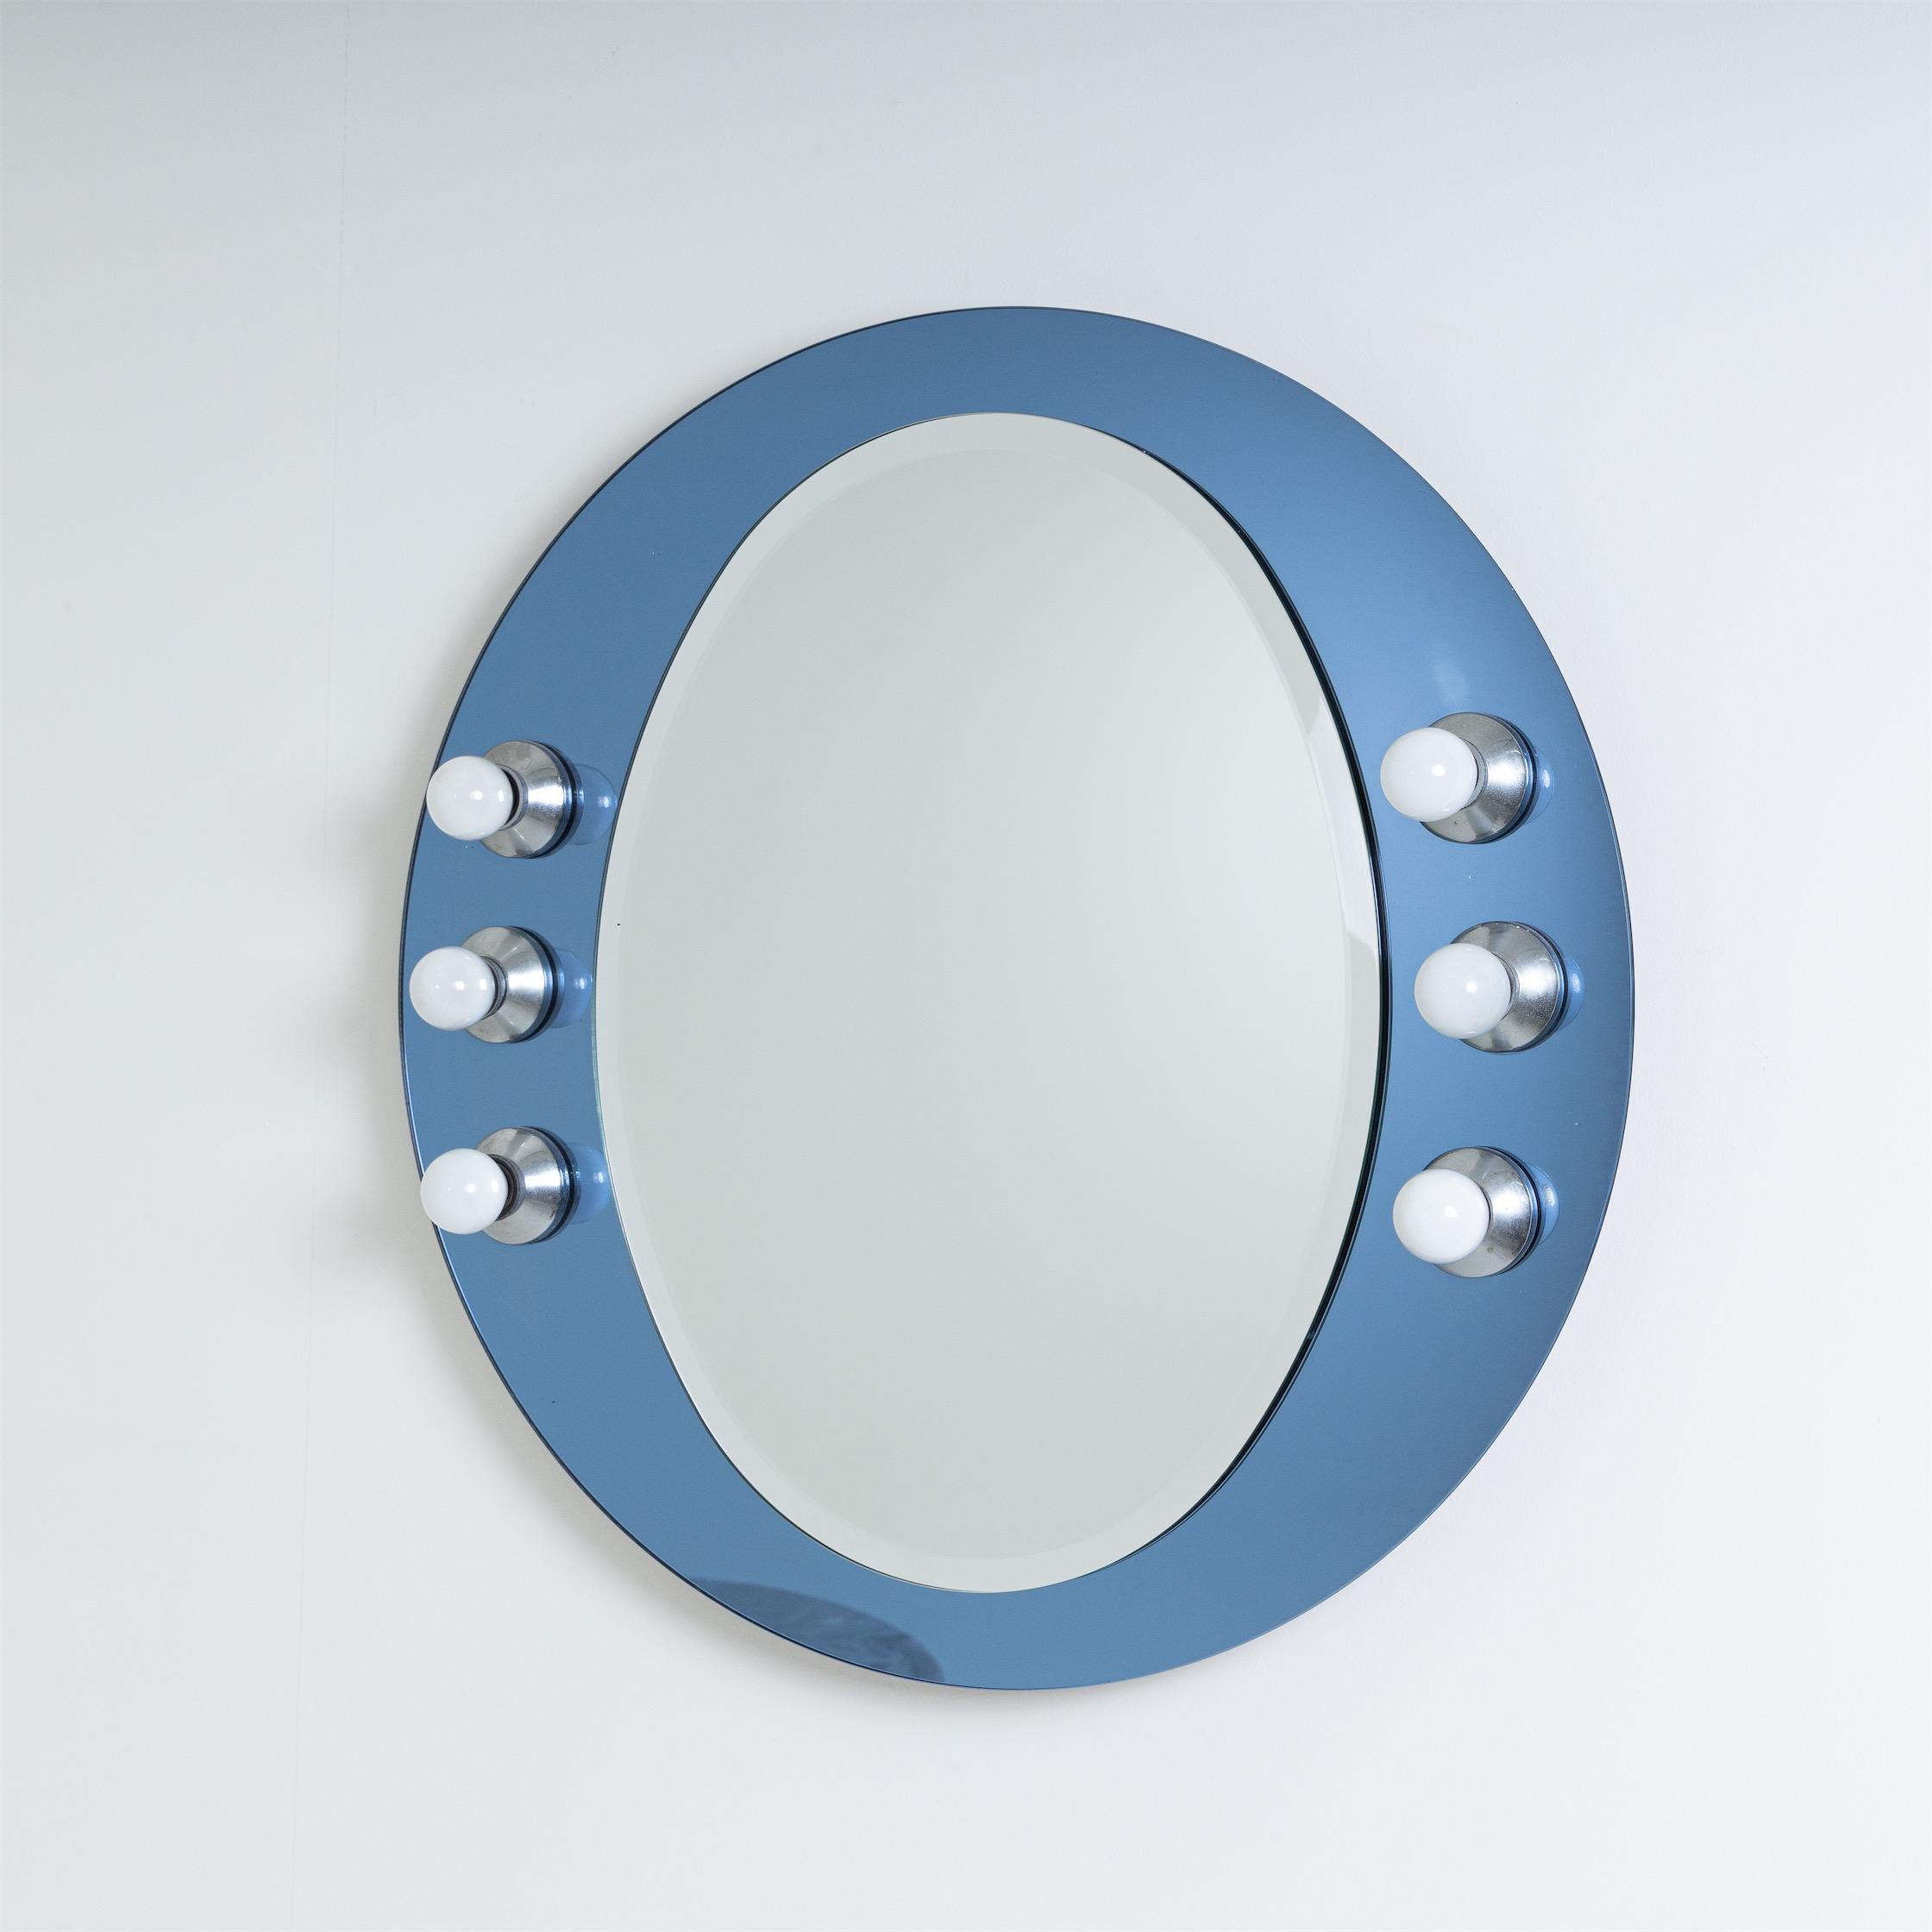 Mid-Century Modern Illuminated Wall Mirror, Italy 1970s For Sale